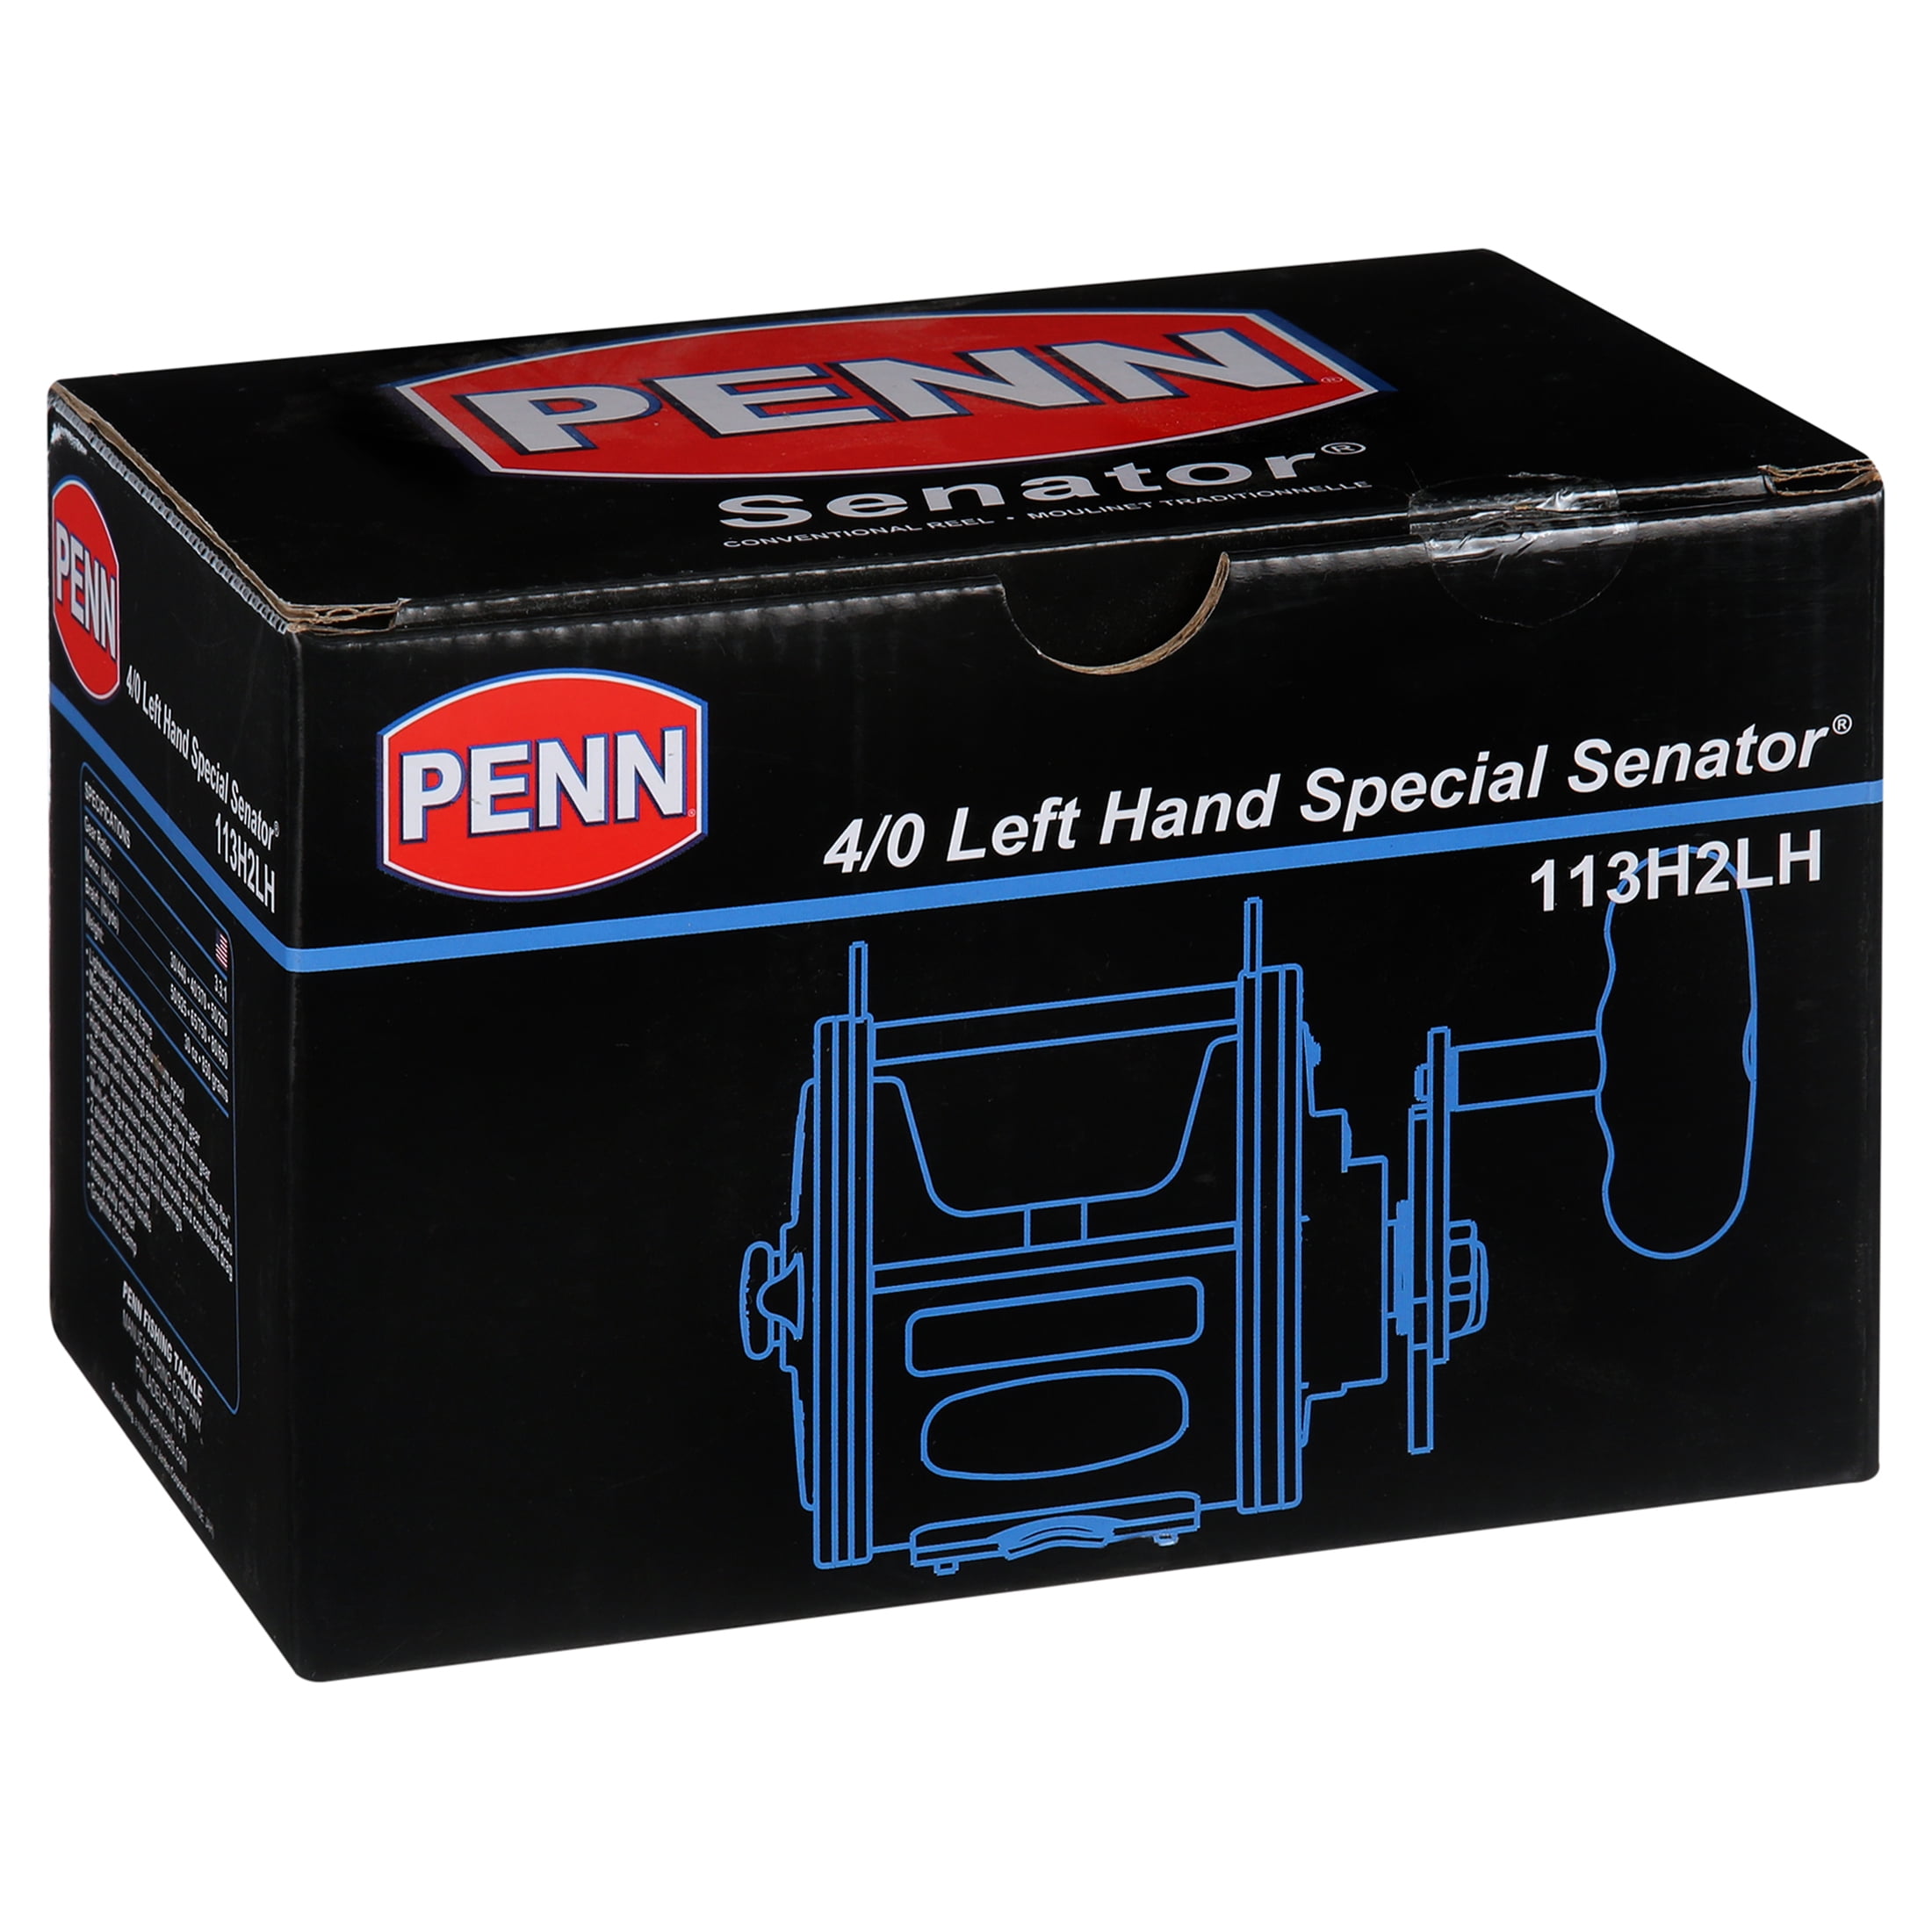 Penn 4/0 Special Senator Left Hand 30 Lb. Mono Conventional